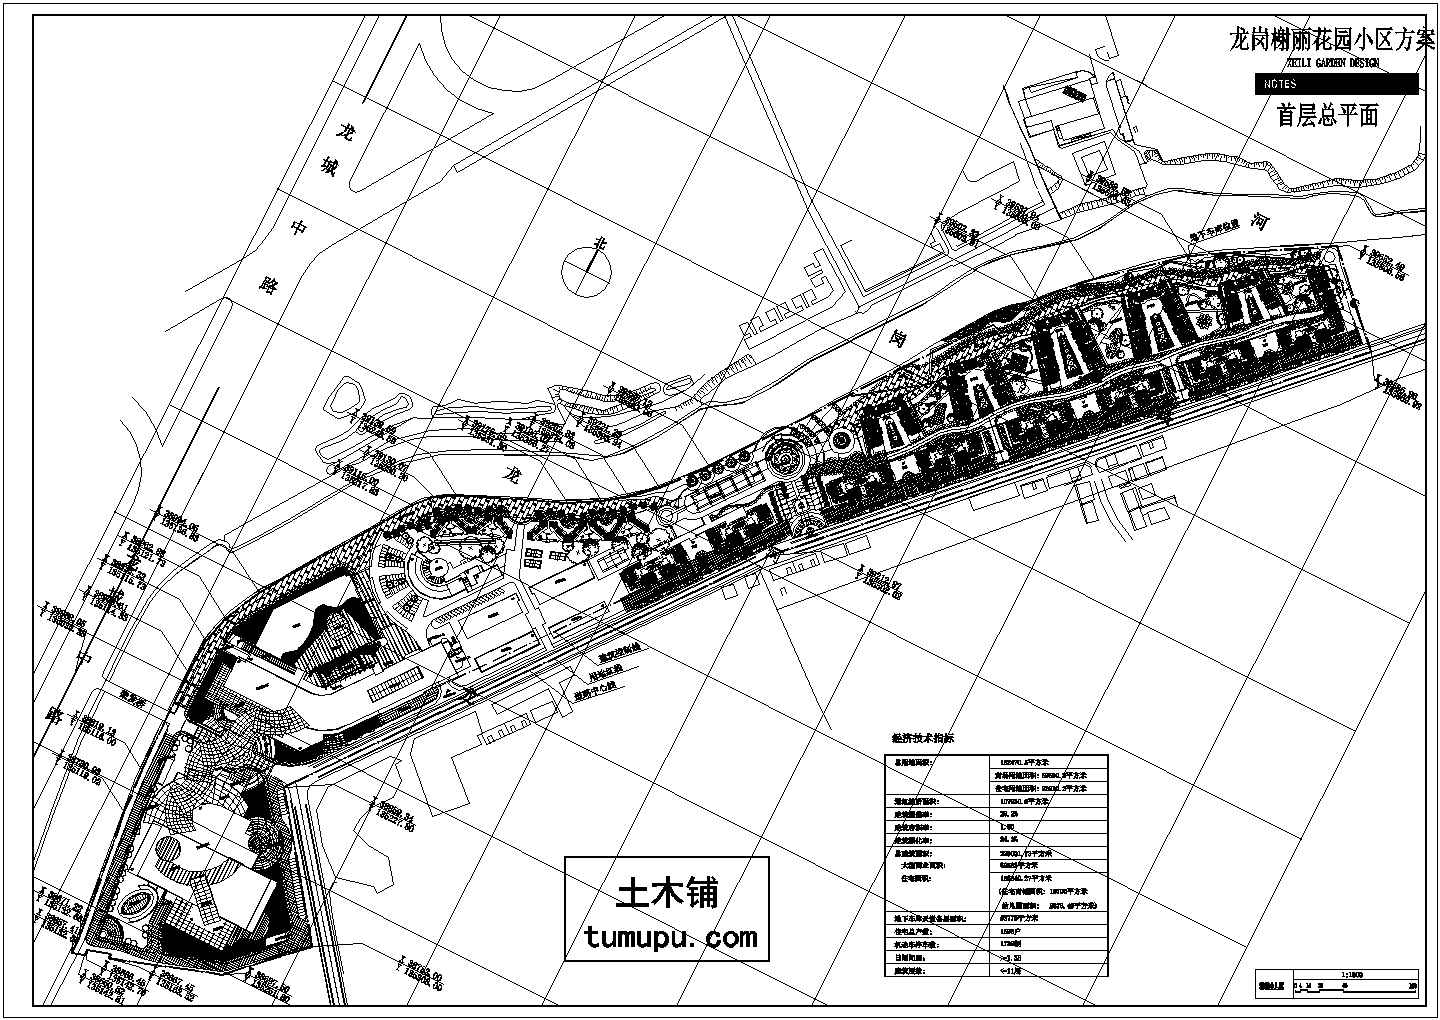 龙岗榭丽花园小区方案设计cad图(含总平面图)